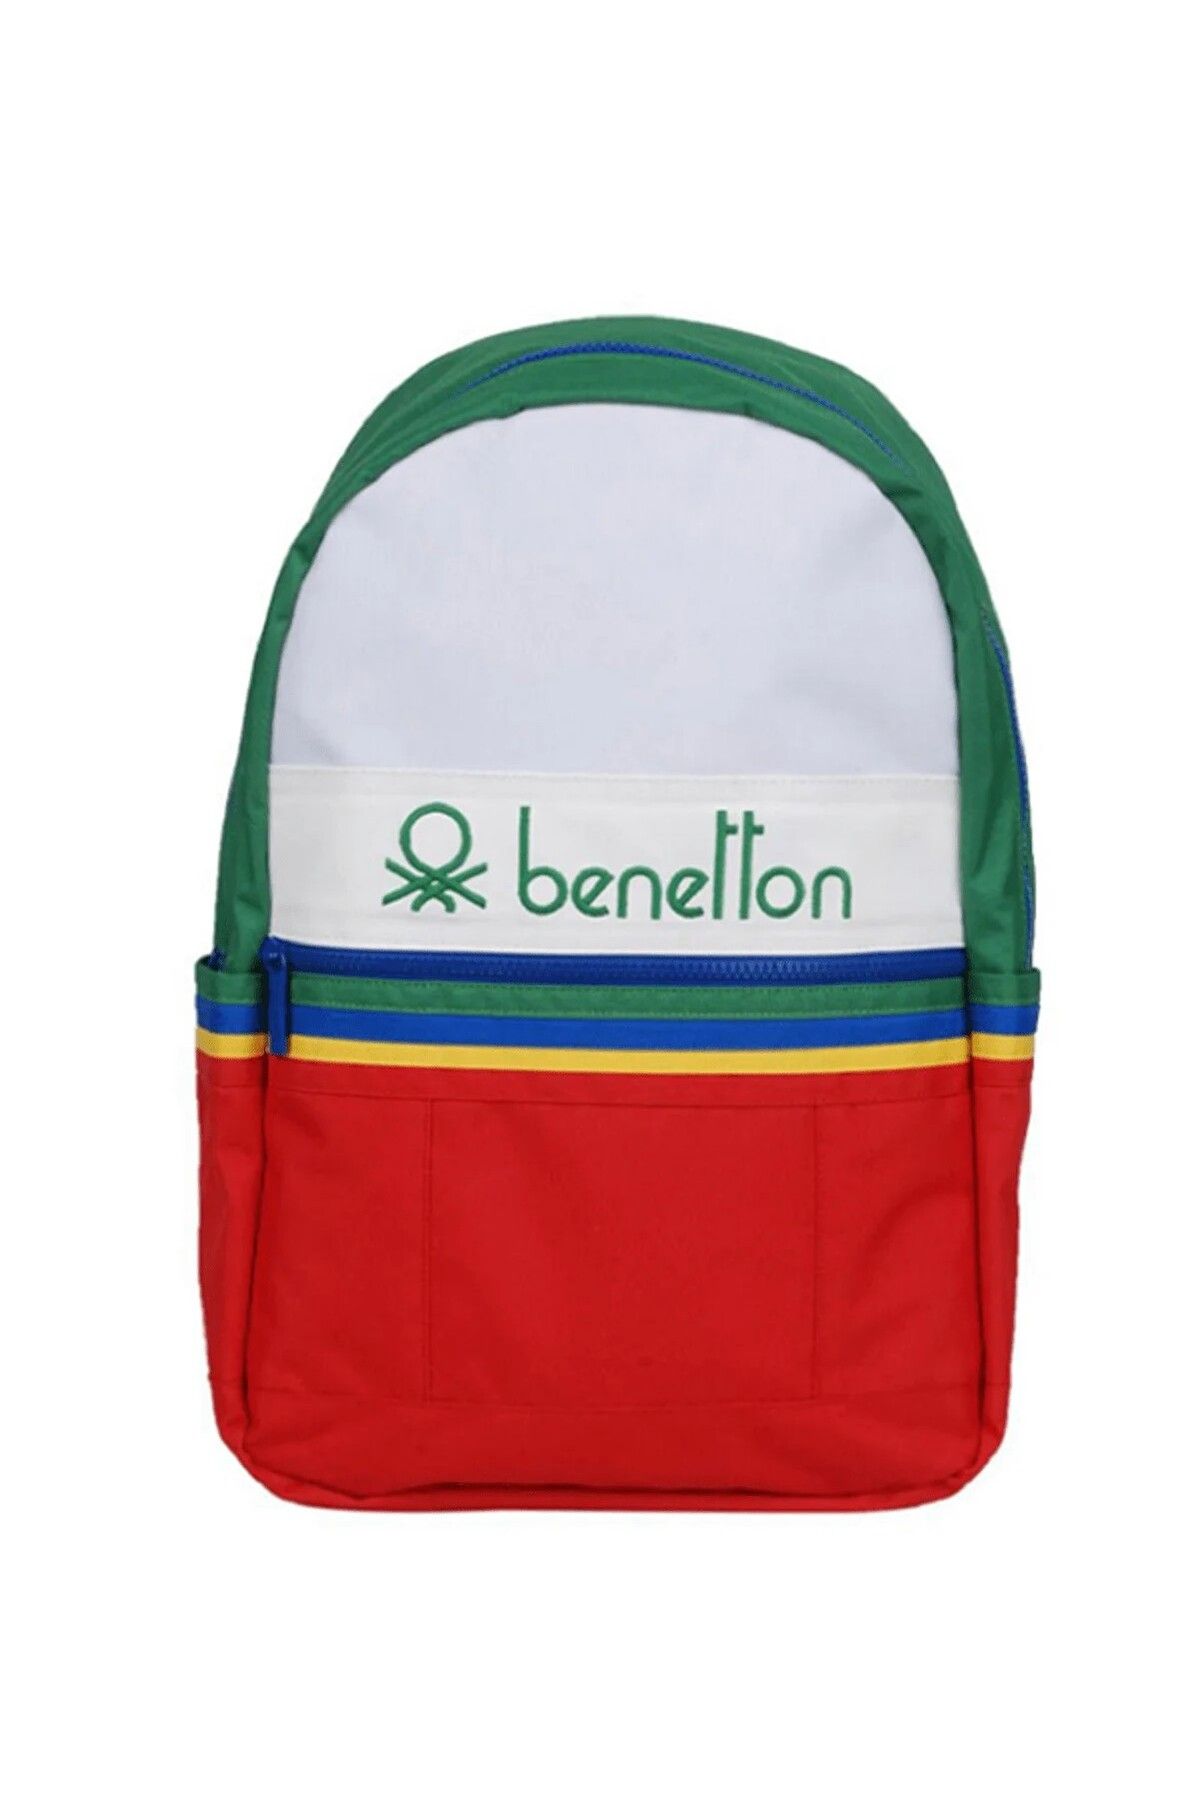 United Colors of Benetton Benetton Su Geçirmez Laptop Bölmeli Seyahat Spor Okul Sırt Çantası (YERLİ ÜRETİM)